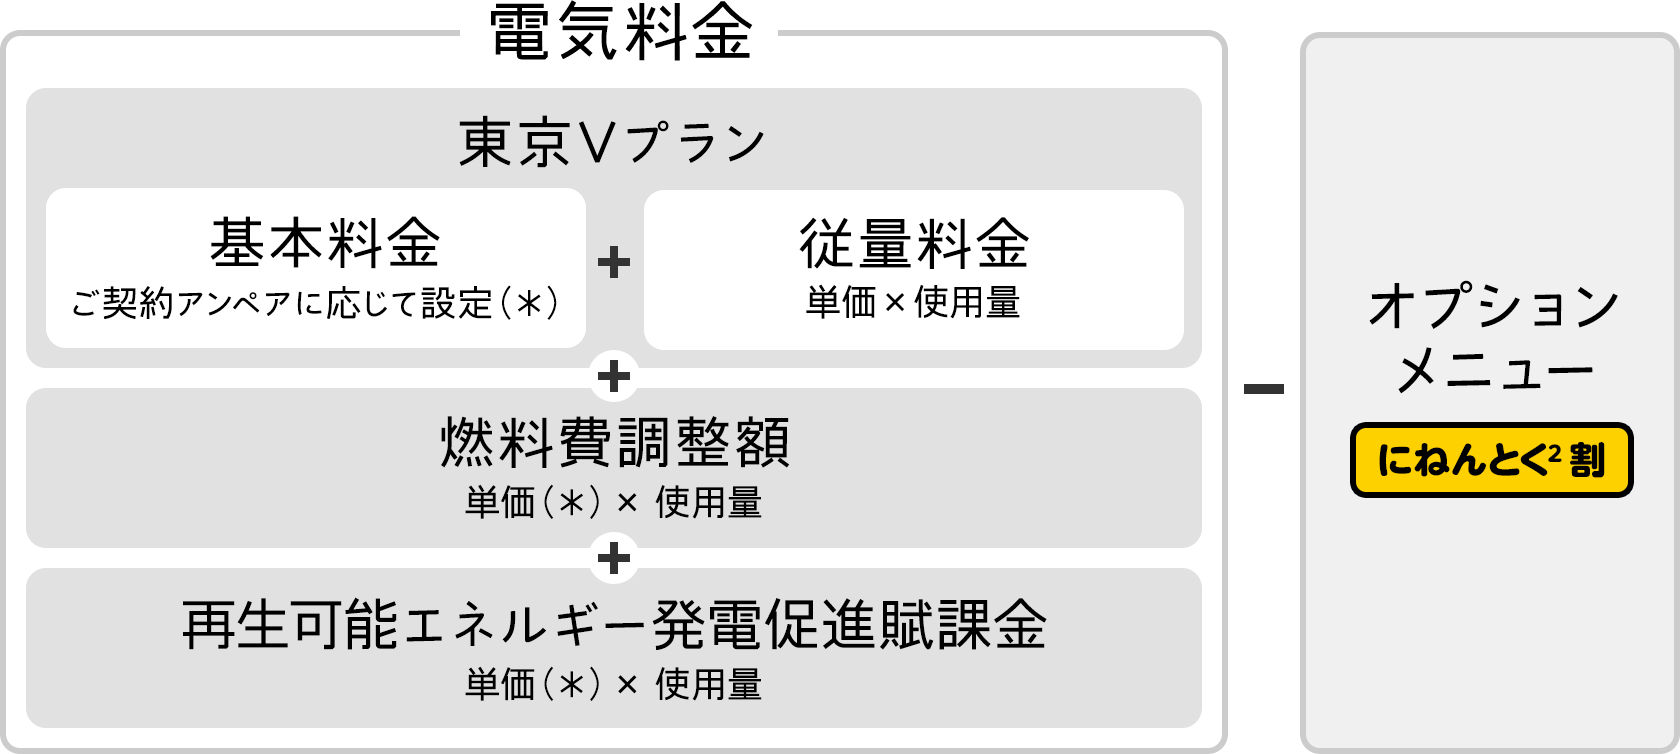 東京Vプランの料金体系